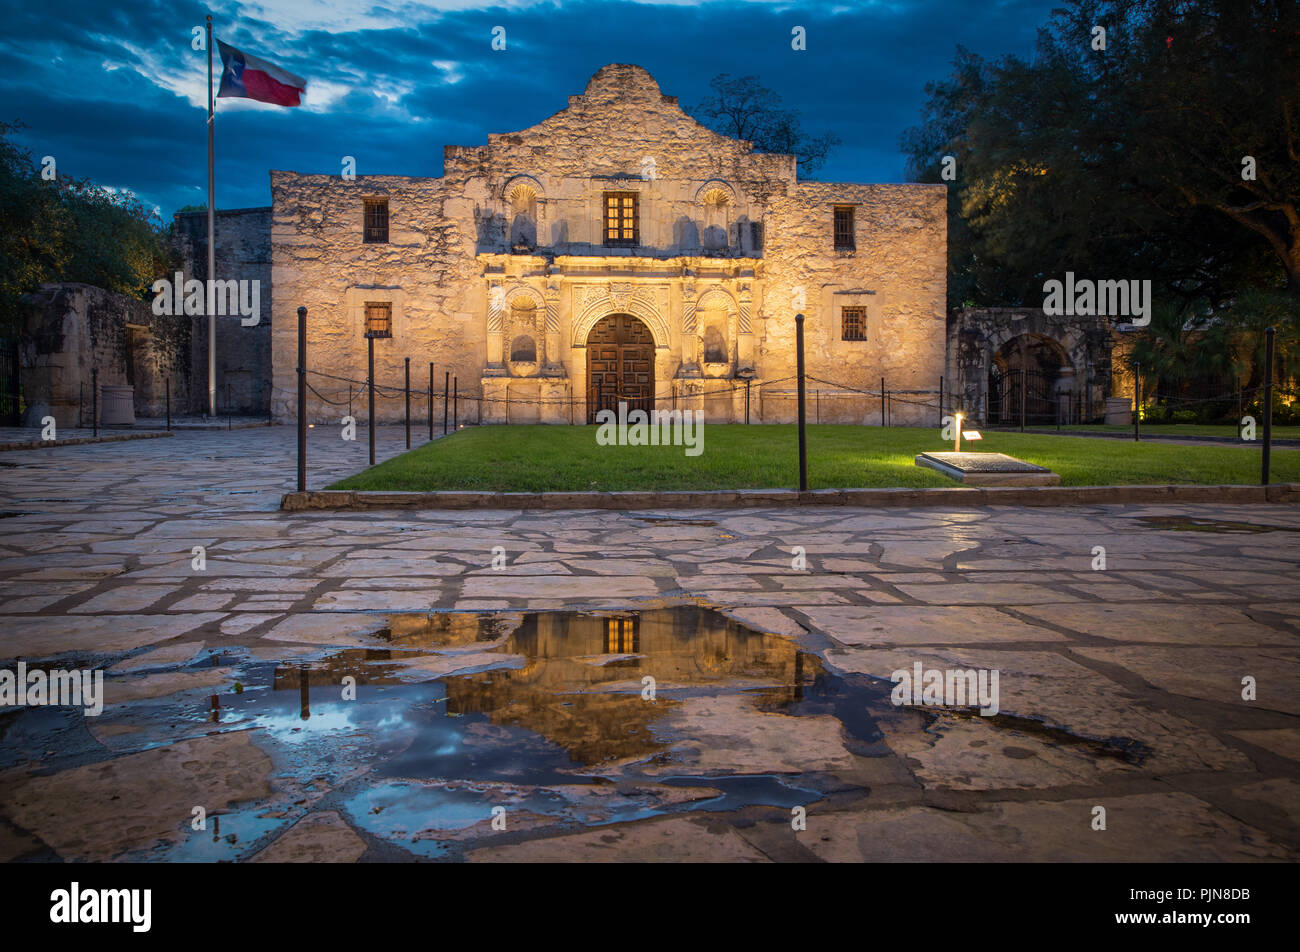 L'Alamo est une ancienne mission espagnole (comme une église construite par des missionnaires catholiques au ministre pour les autochtones) qui est dans ce qui est maintenant San Antonio, Texa Banque D'Images